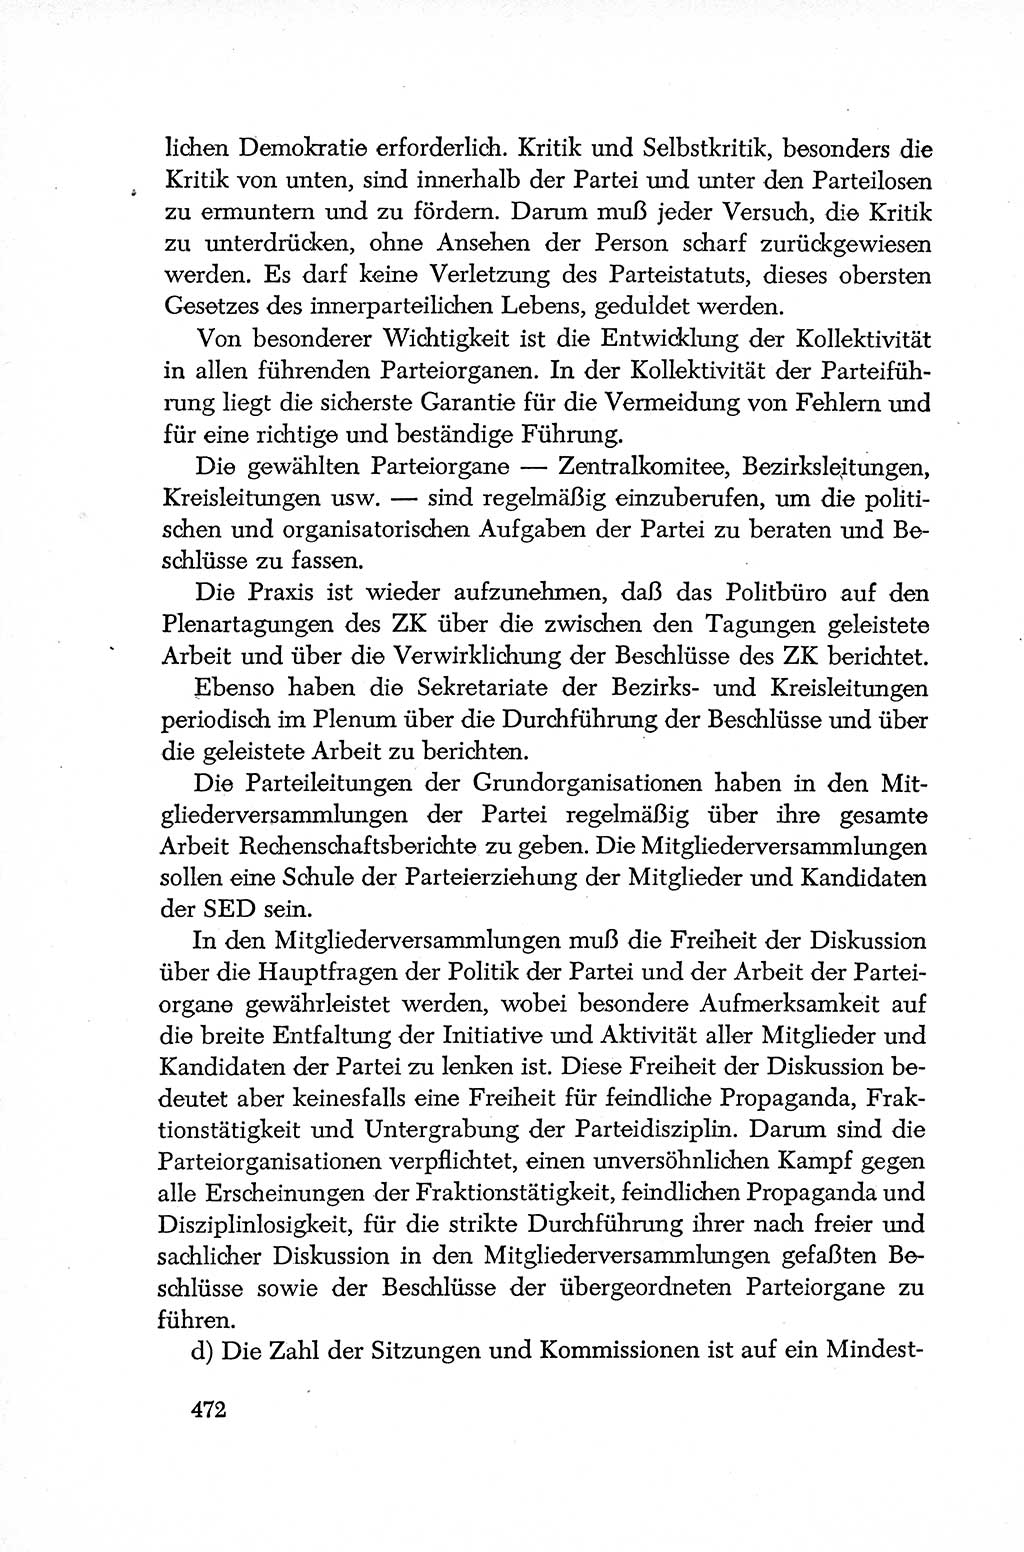 Dokumente der Sozialistischen Einheitspartei Deutschlands (SED) [Deutsche Demokratische Republik (DDR)] 1952-1953, Seite 472 (Dok. SED DDR 1952-1953, S. 472)